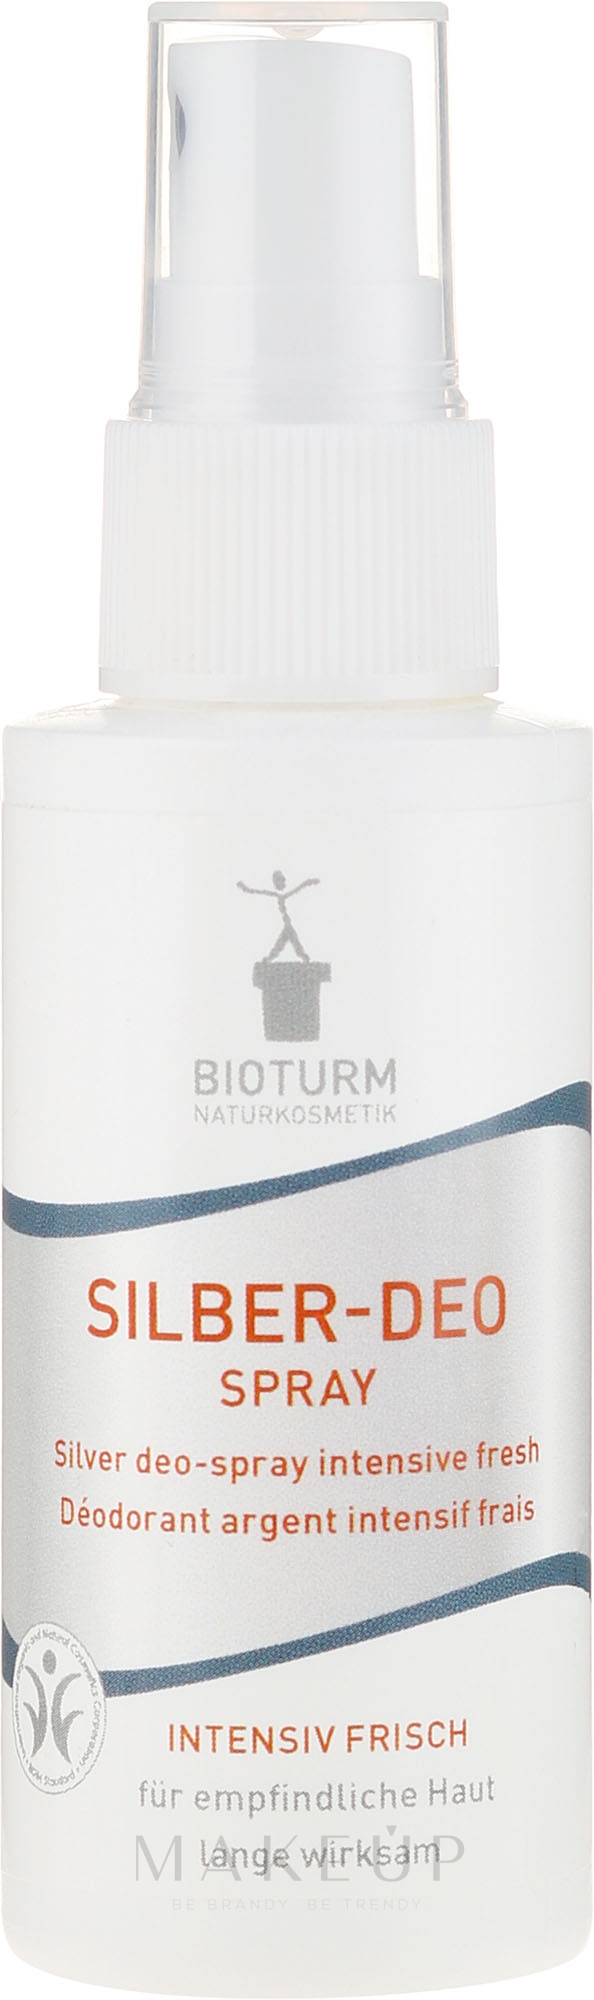 Silber-Deospray für empfindliche Haut №86 - Bioturm Silber-Deo Intensiv Fresh Spray No.86 — Bild 50 ml